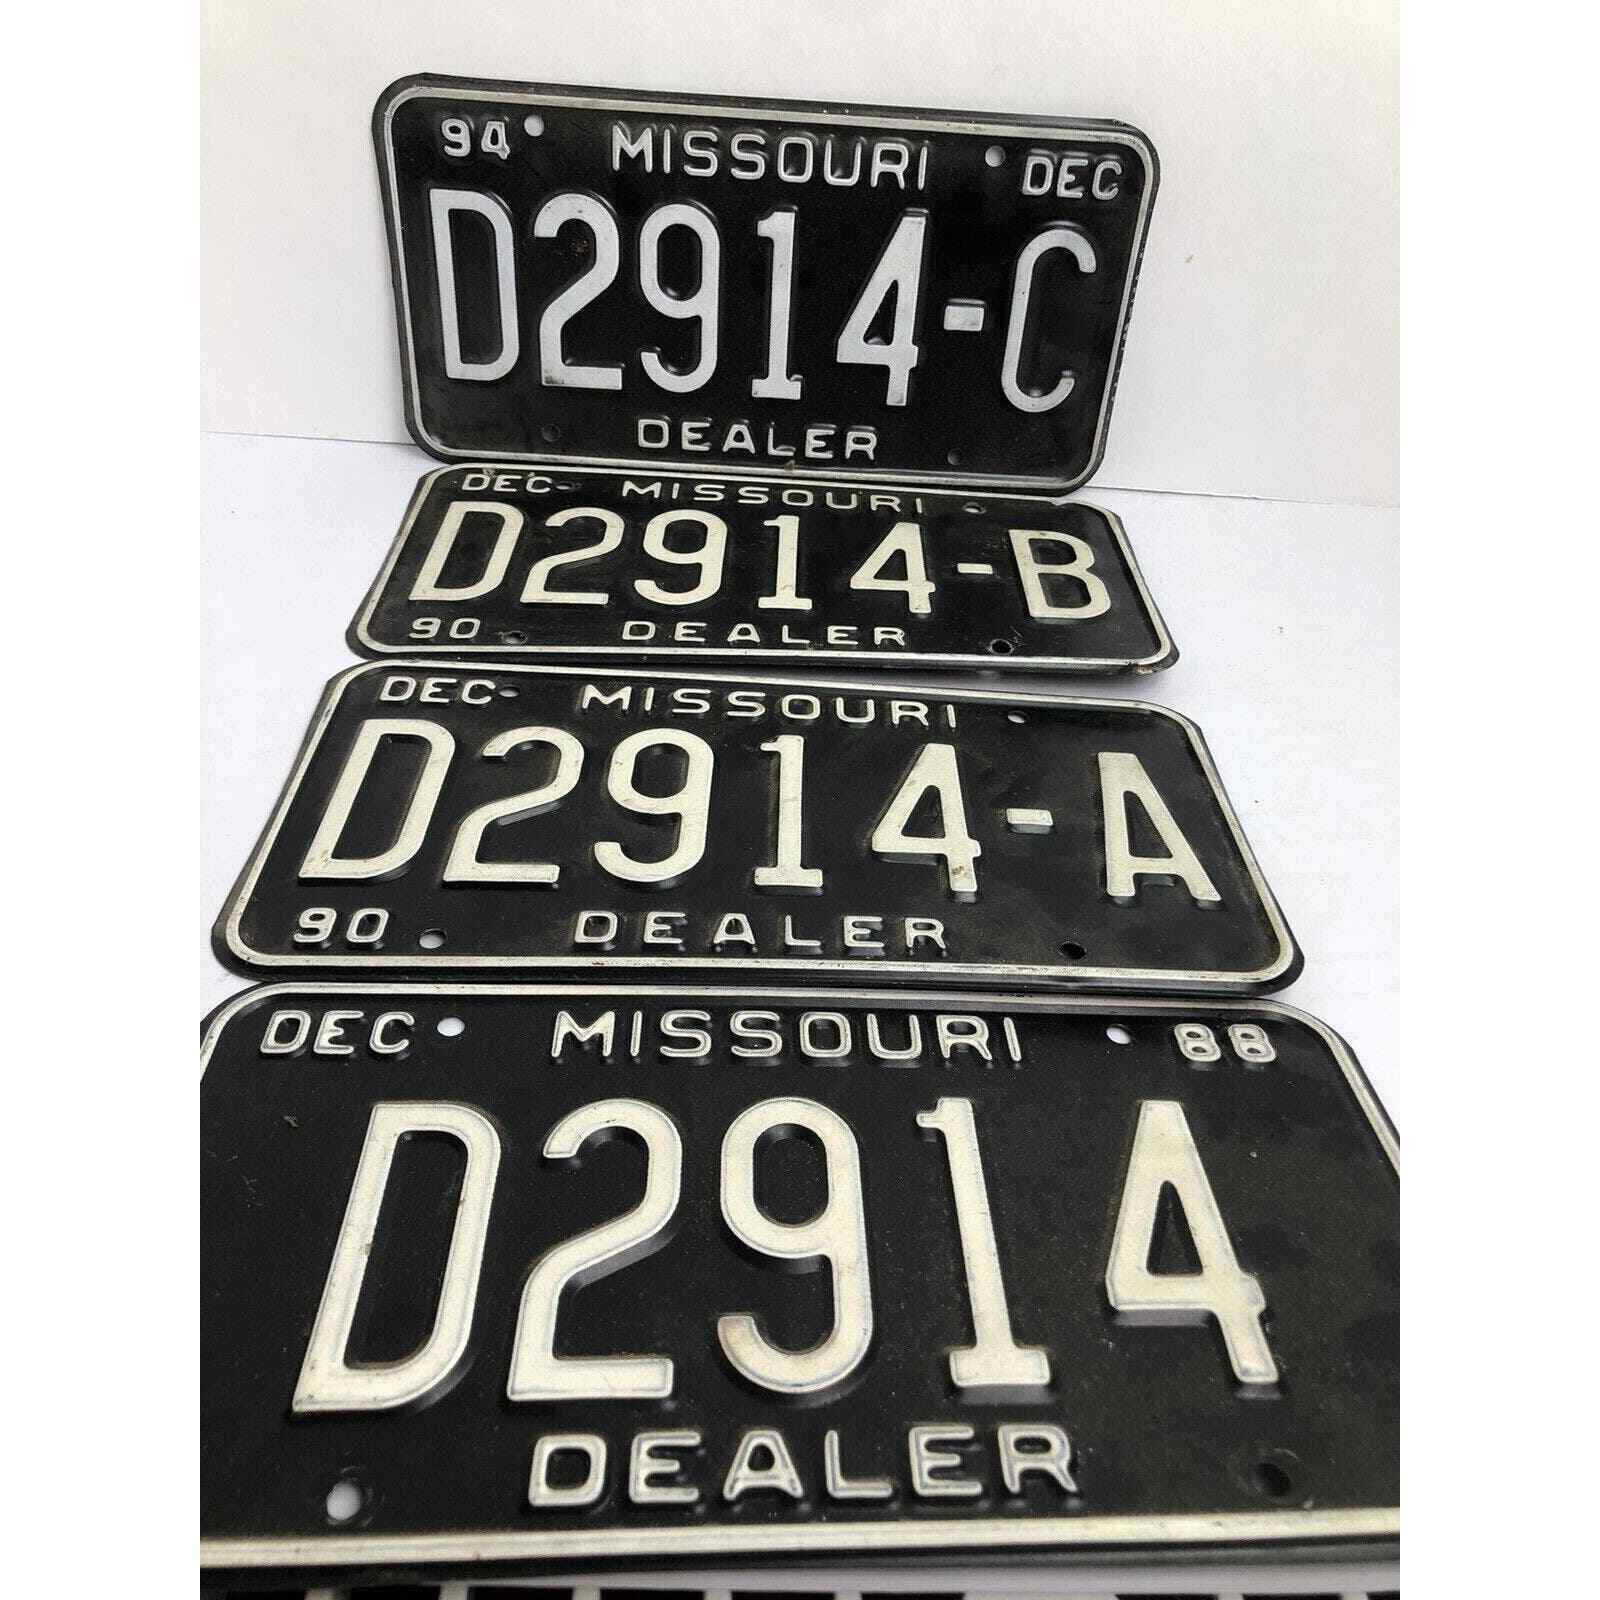 Missouri License Plates Dealer # D2914 (1988) to D2914-C (1994) Four Total Black